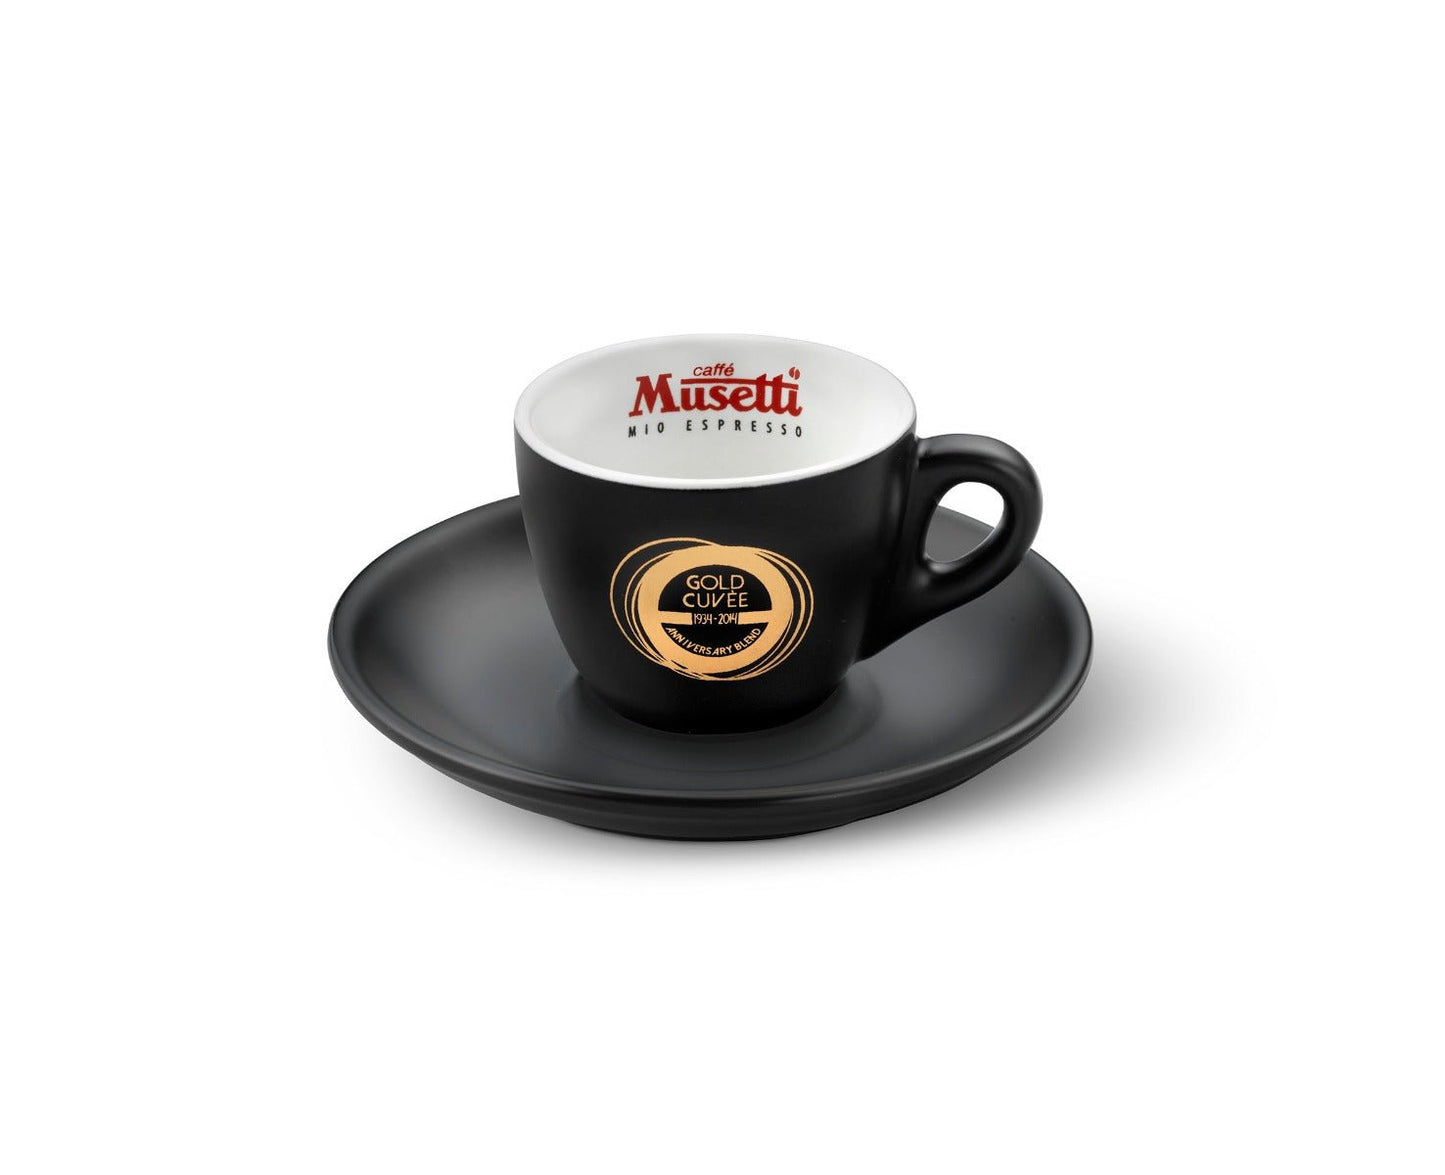 6 tazze caffè Gold Cuvee Musetti - Musetti shop